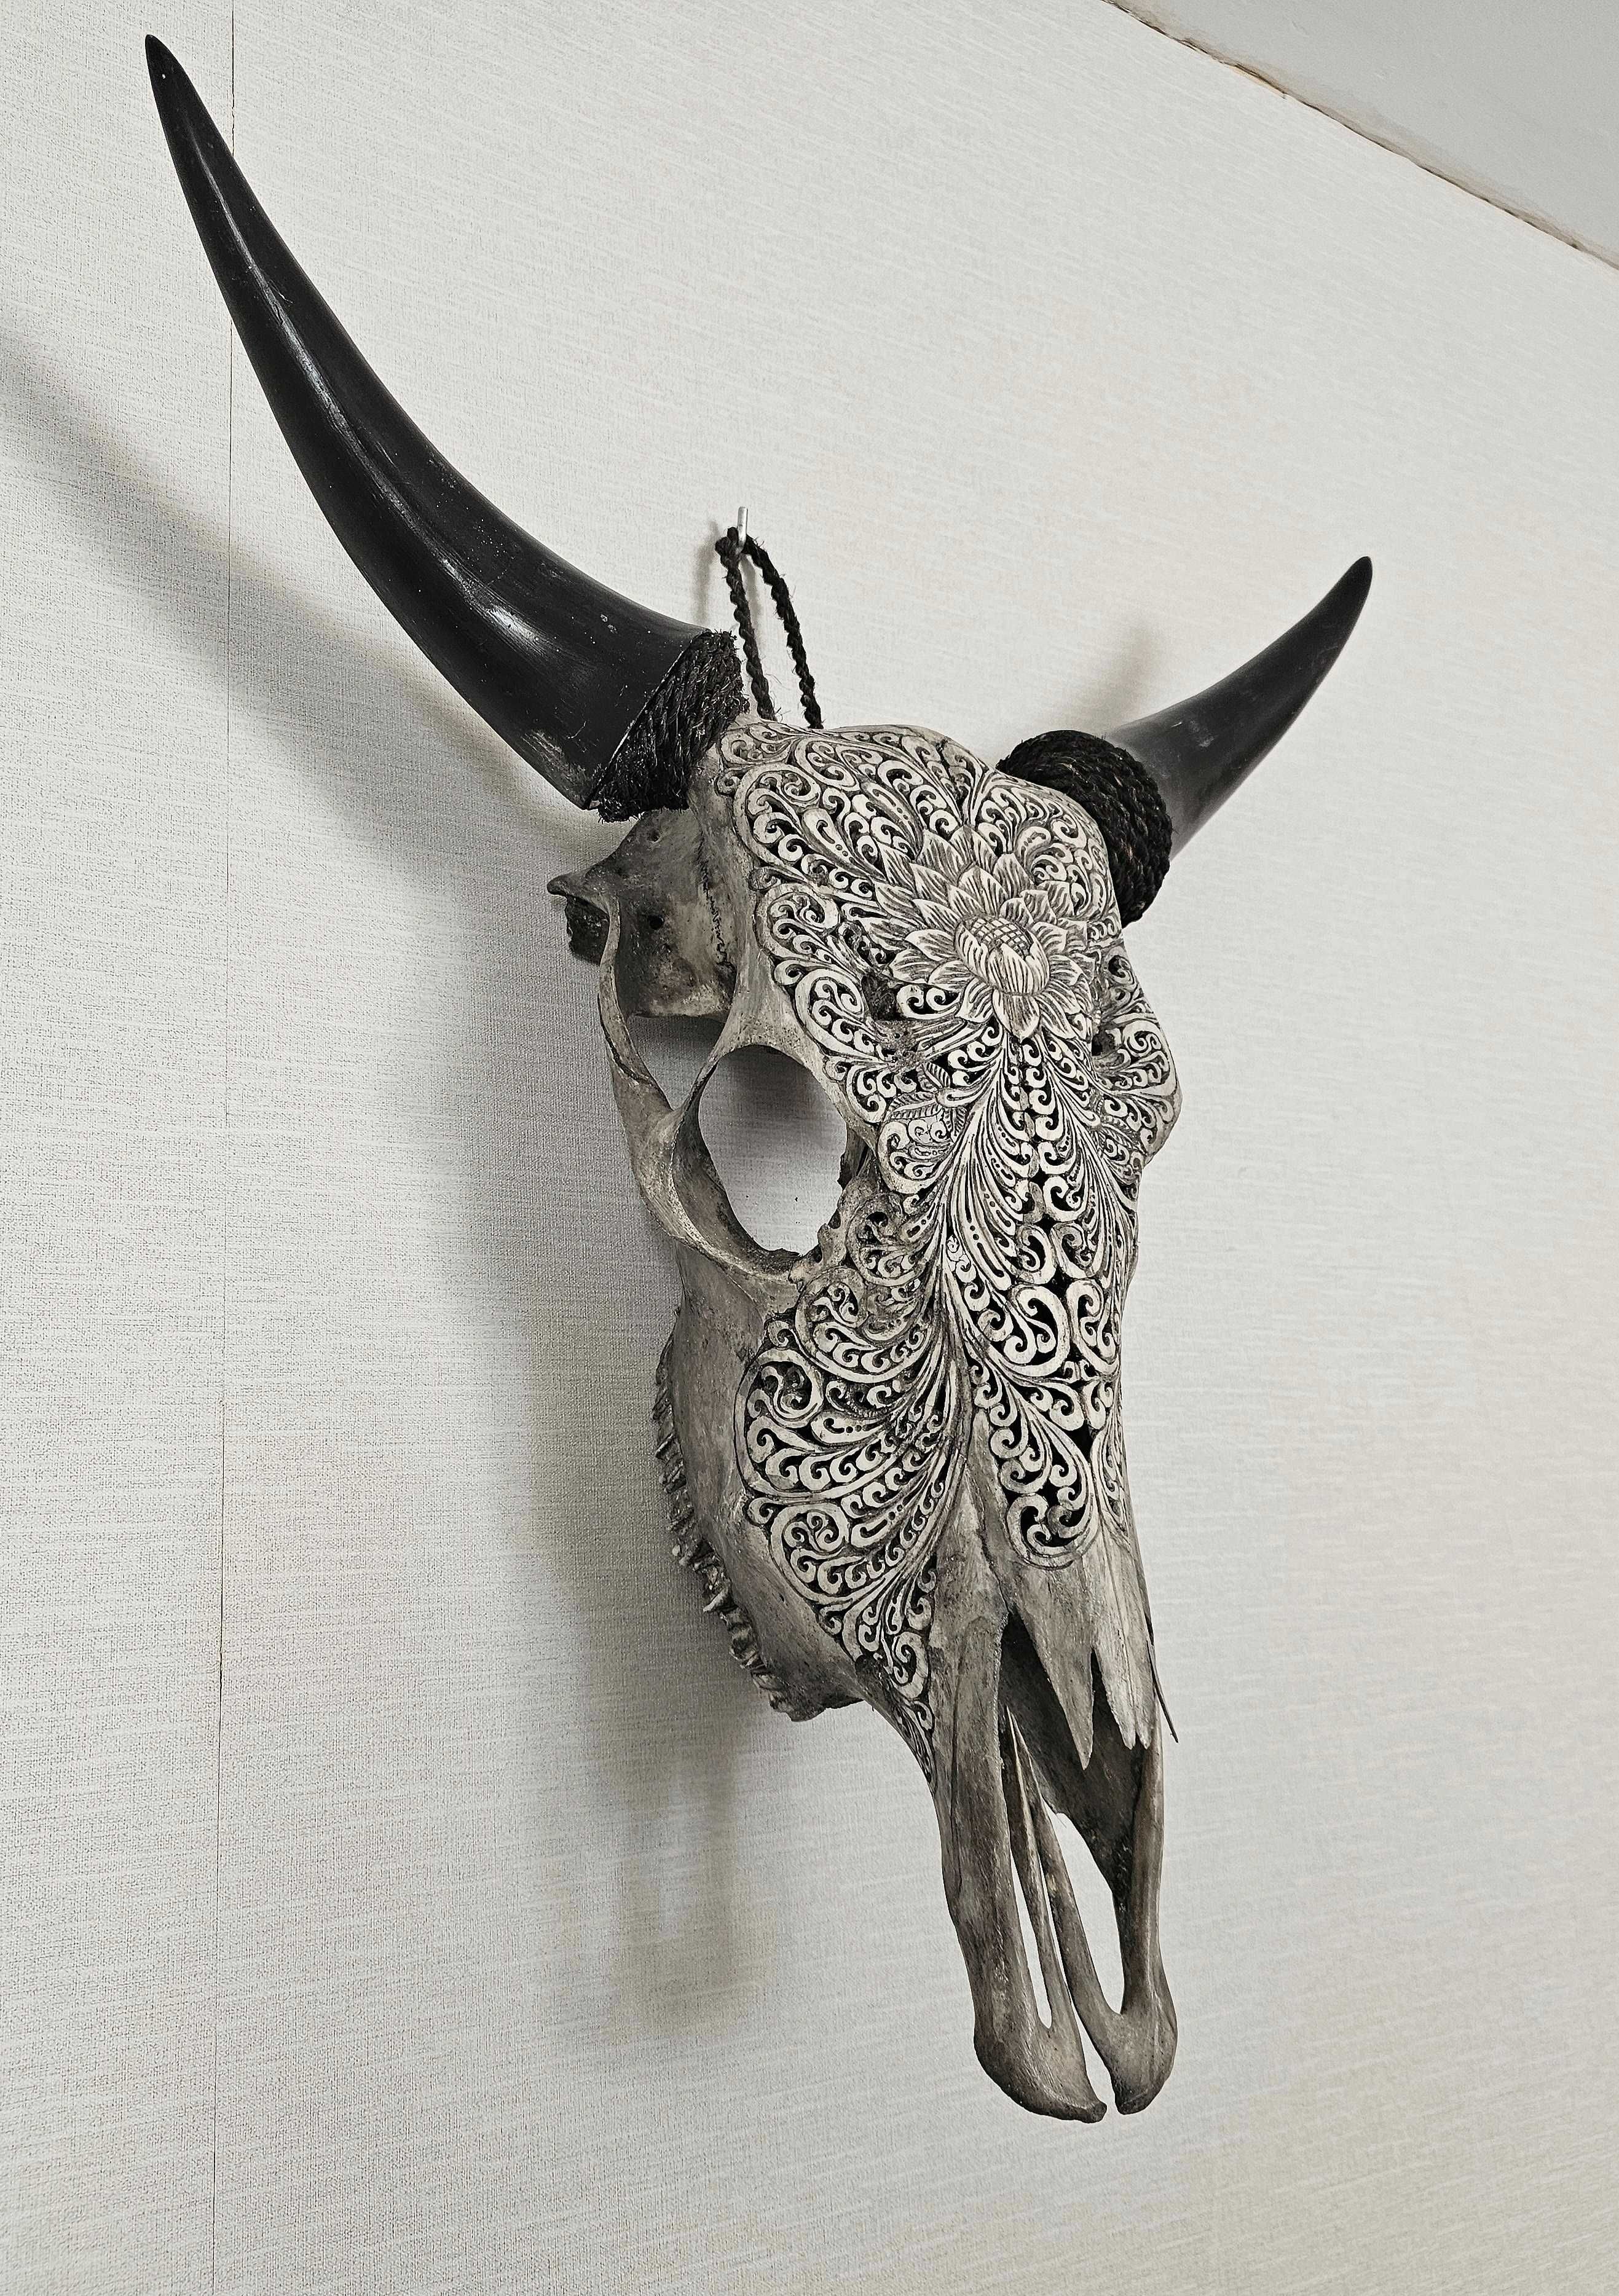 UNIKAT*Rzeźbiona czaszka krowy, rękodzieło, lotos, dekoracja*